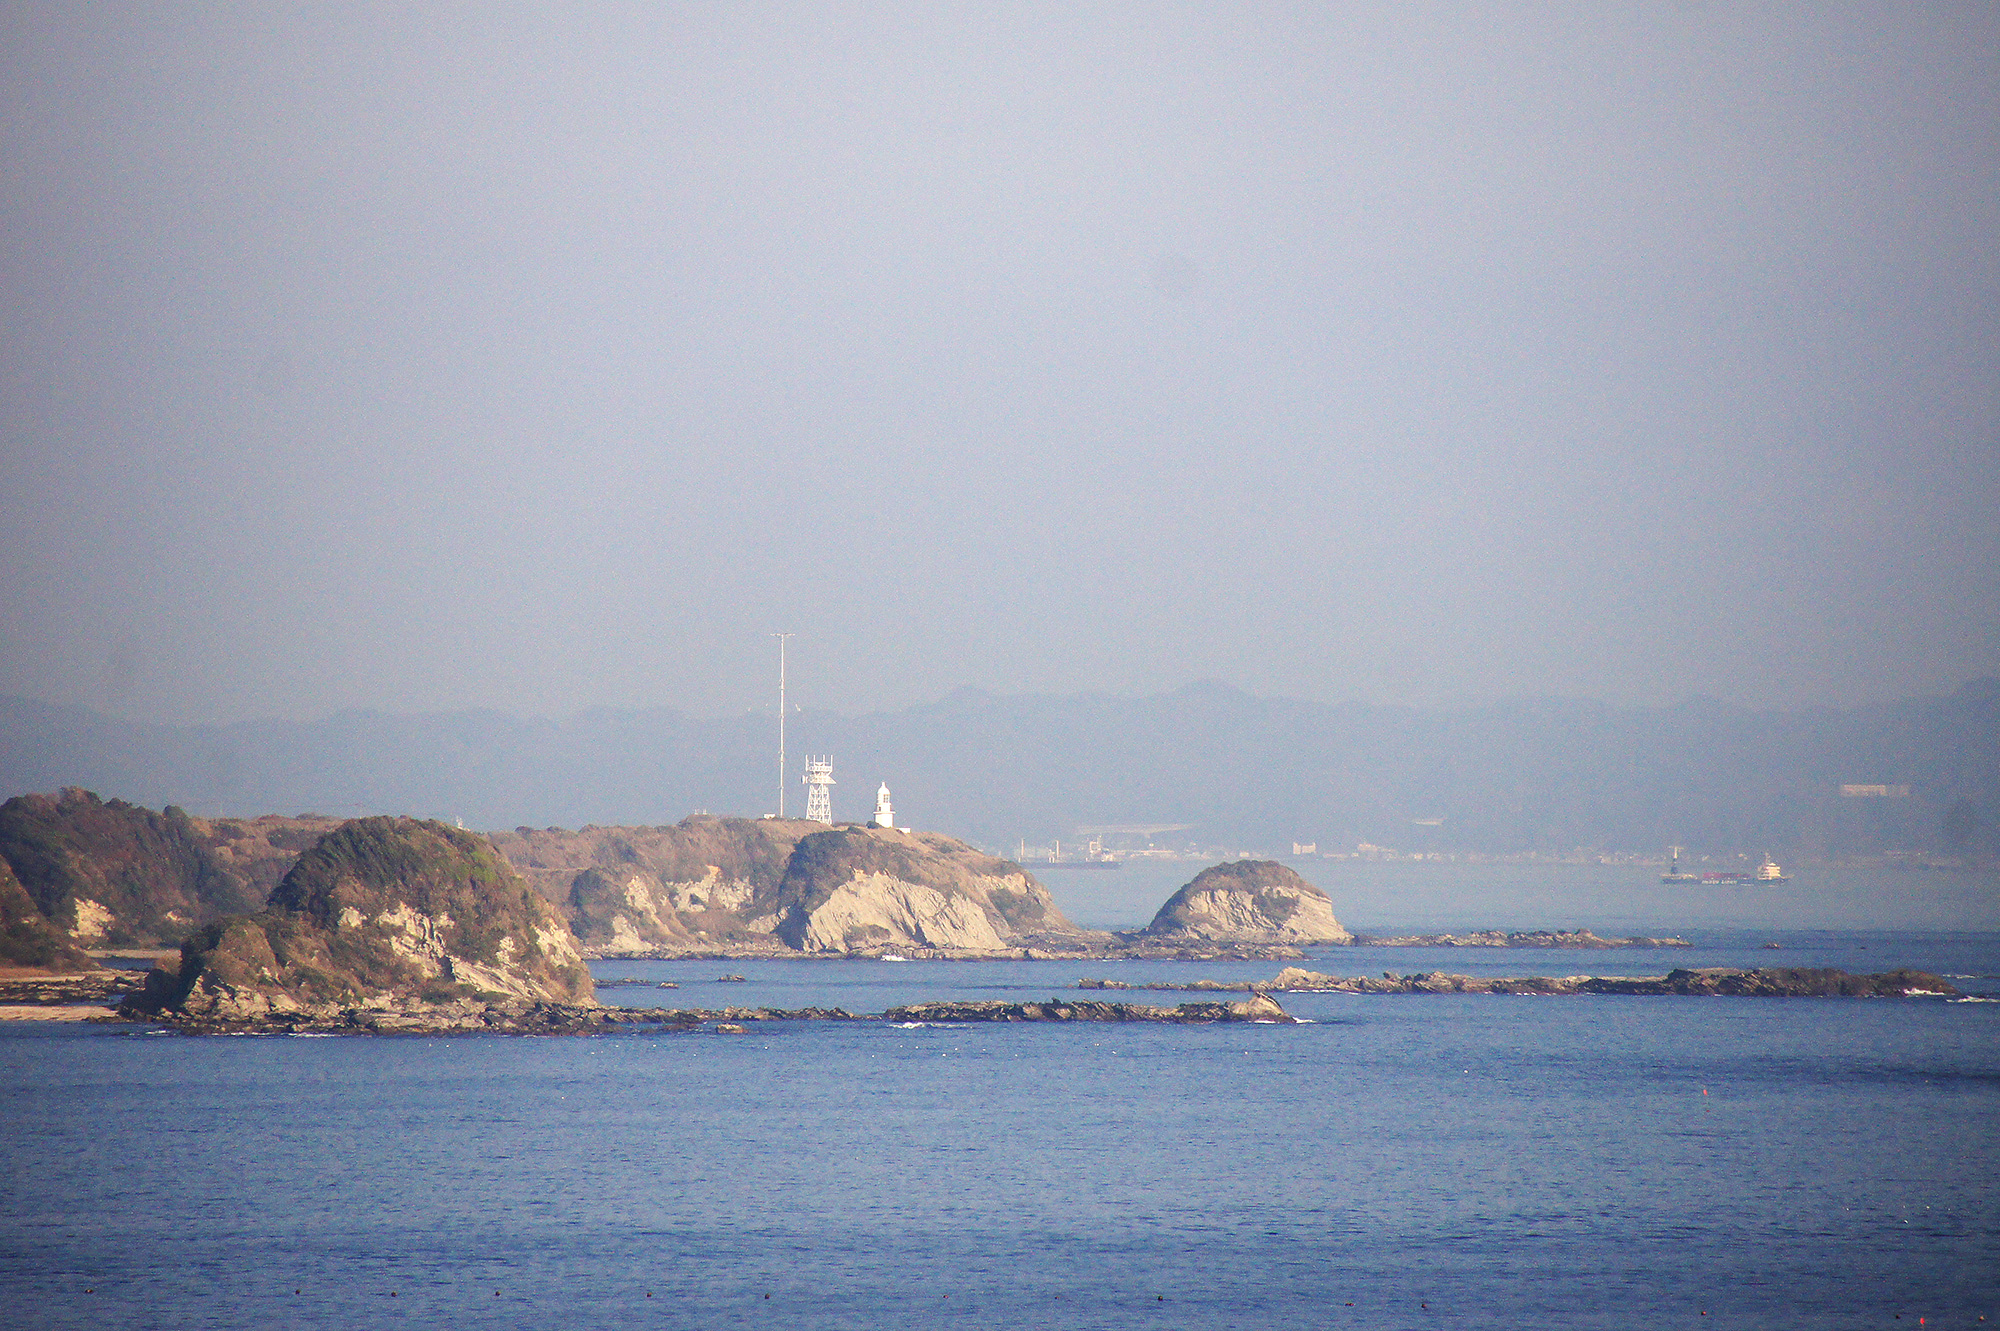 城ヶ島から見た海のフリー写真素材